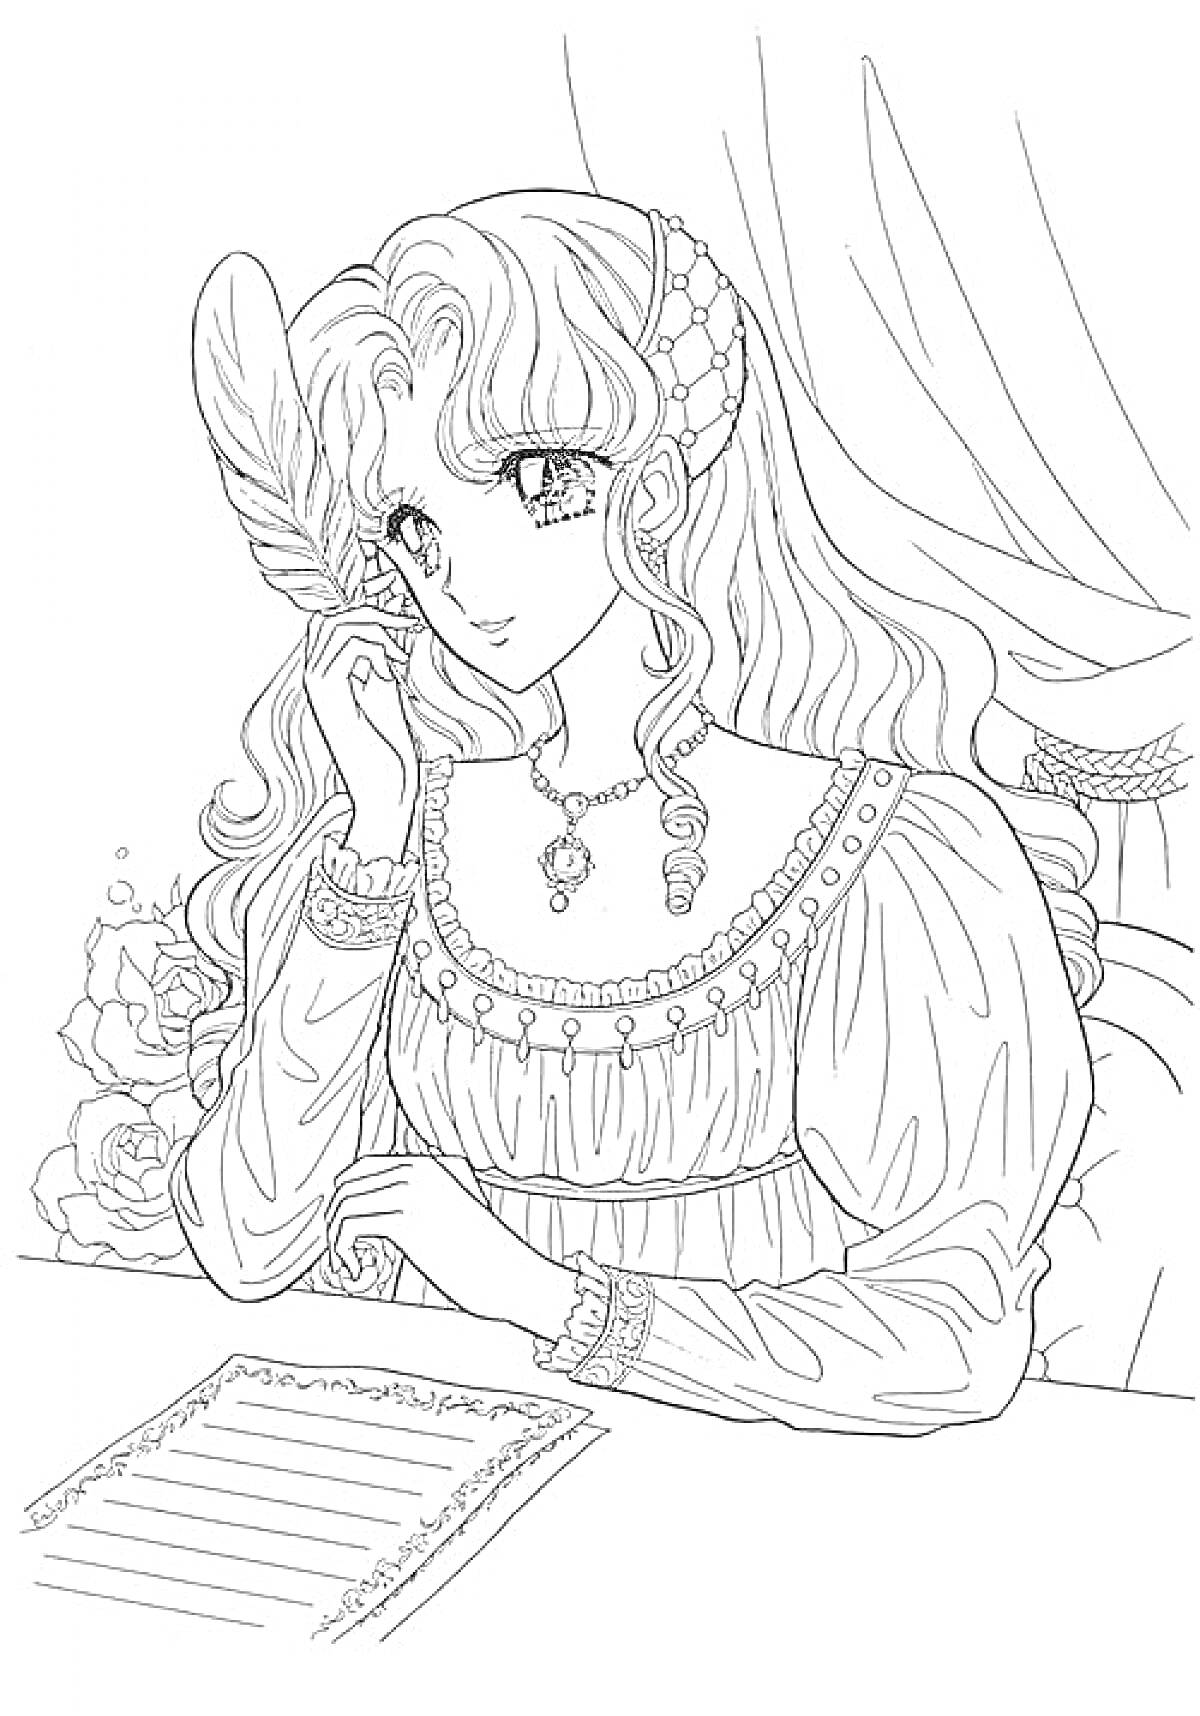 Аниме девушка пишет письмо, с длинными волосами, пером в руке, в платье с украшениями, сидящая за столом на фоне занавеса и цветов